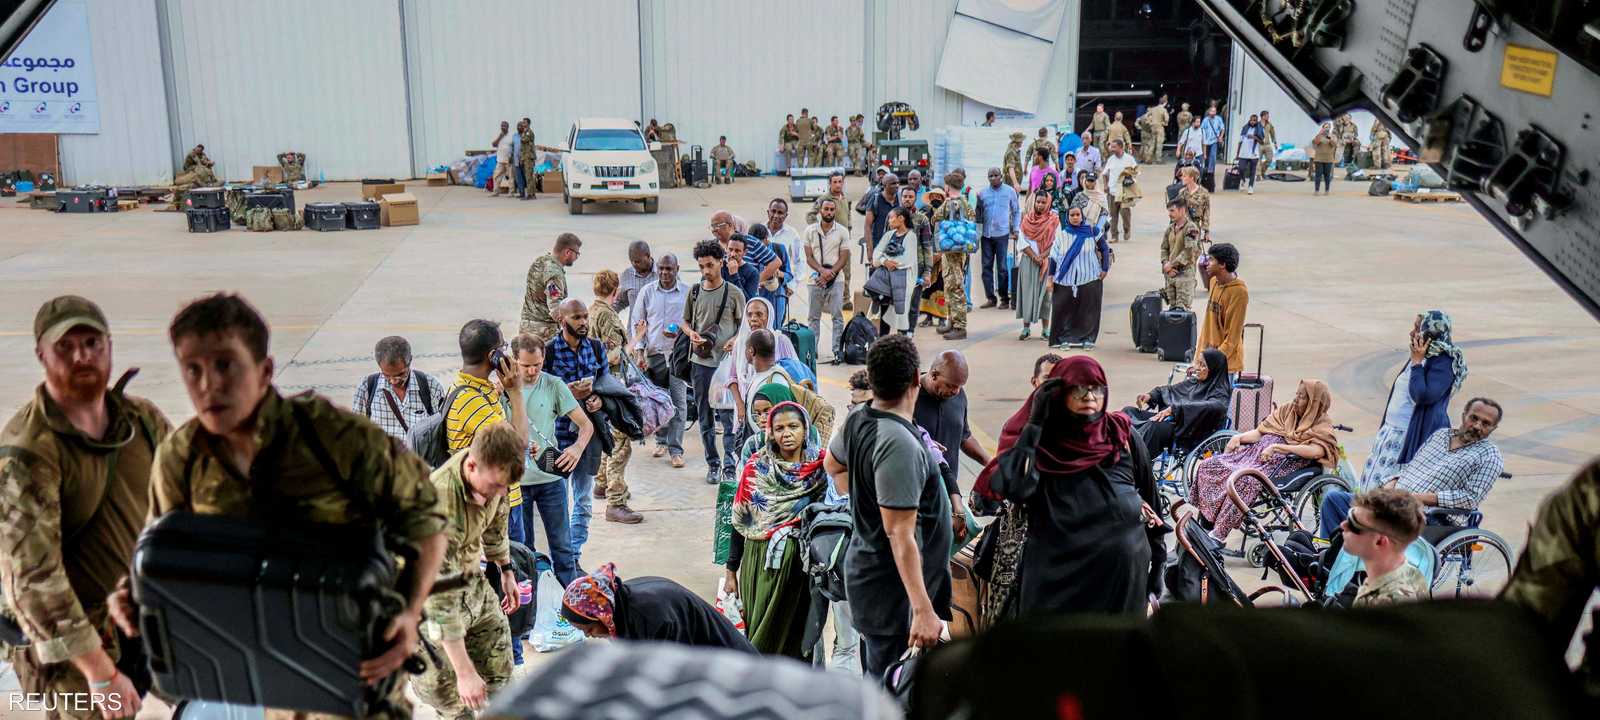 بعض الدول أجلت رعاياها جوا من مطار الخرطوم